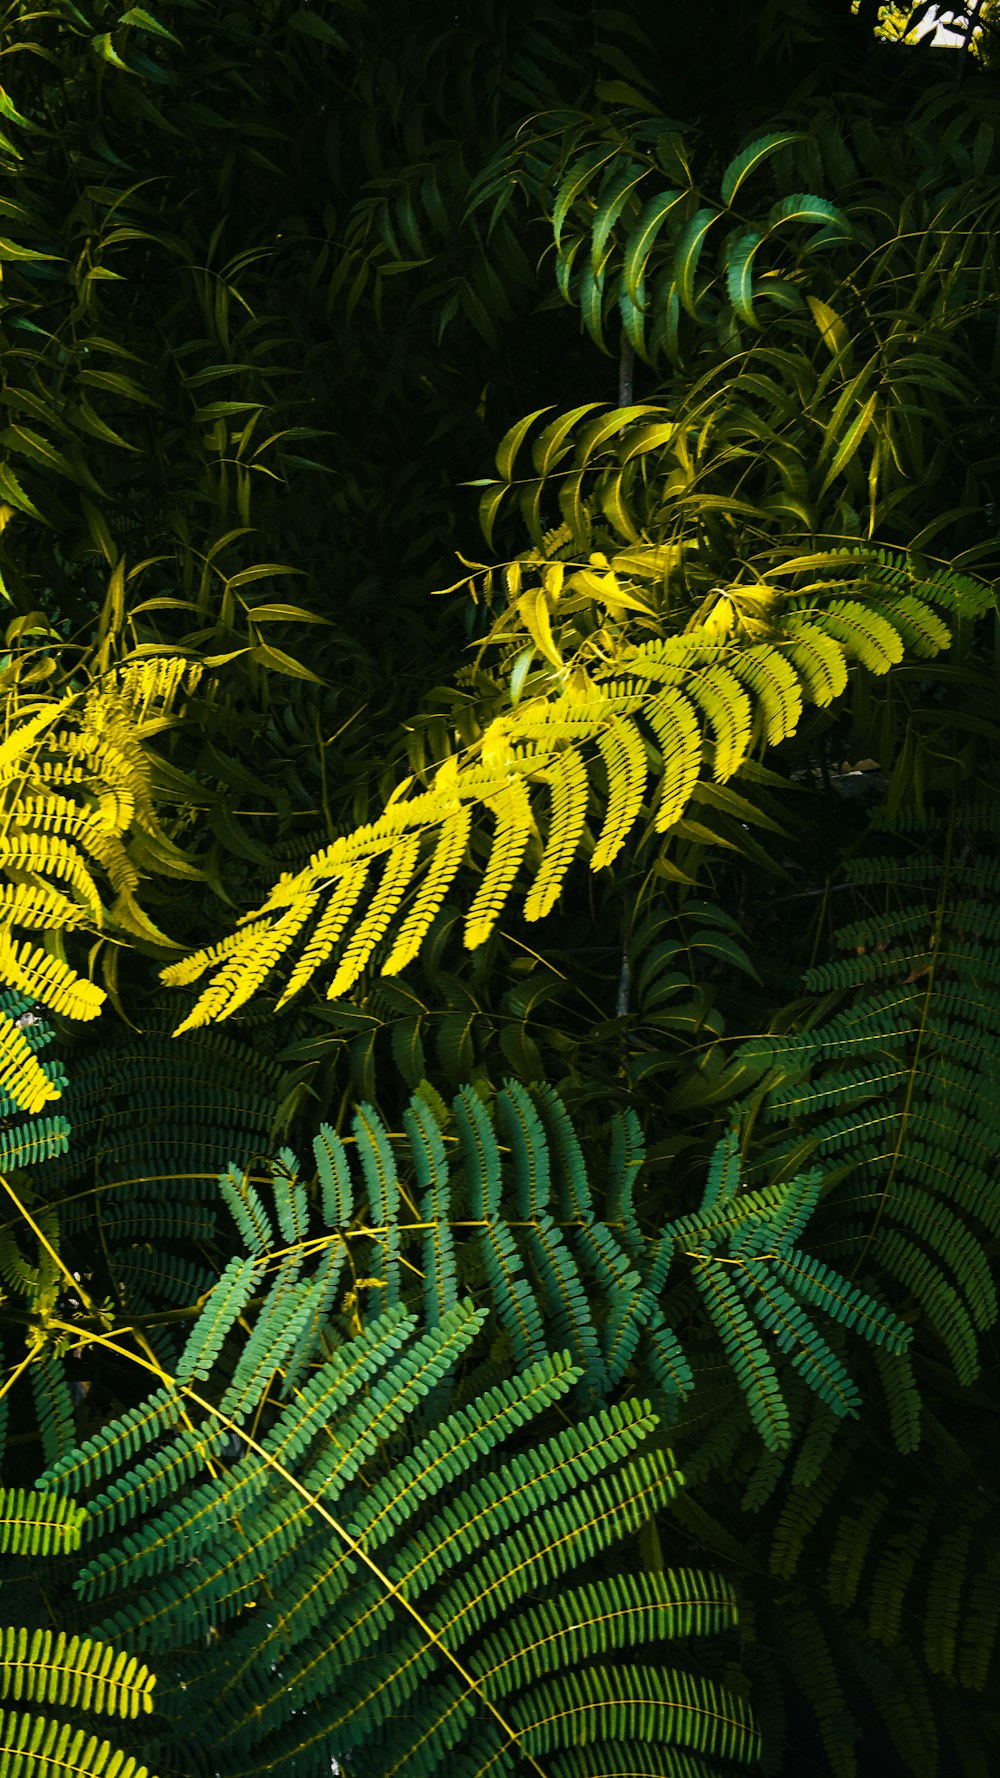 Fern plant: Cây dương xỉ là một trong những loại thực vật phổ biến nhất, được yêu thích bởi sự đơn giản và tính thẩm mỹ của nó. Hãy cùng chiêm ngưỡng hình ảnh của chúng tôi để tìm hiểu thêm về loài cây này và cách áp dụng vào thiết kế nội thất của bạn.